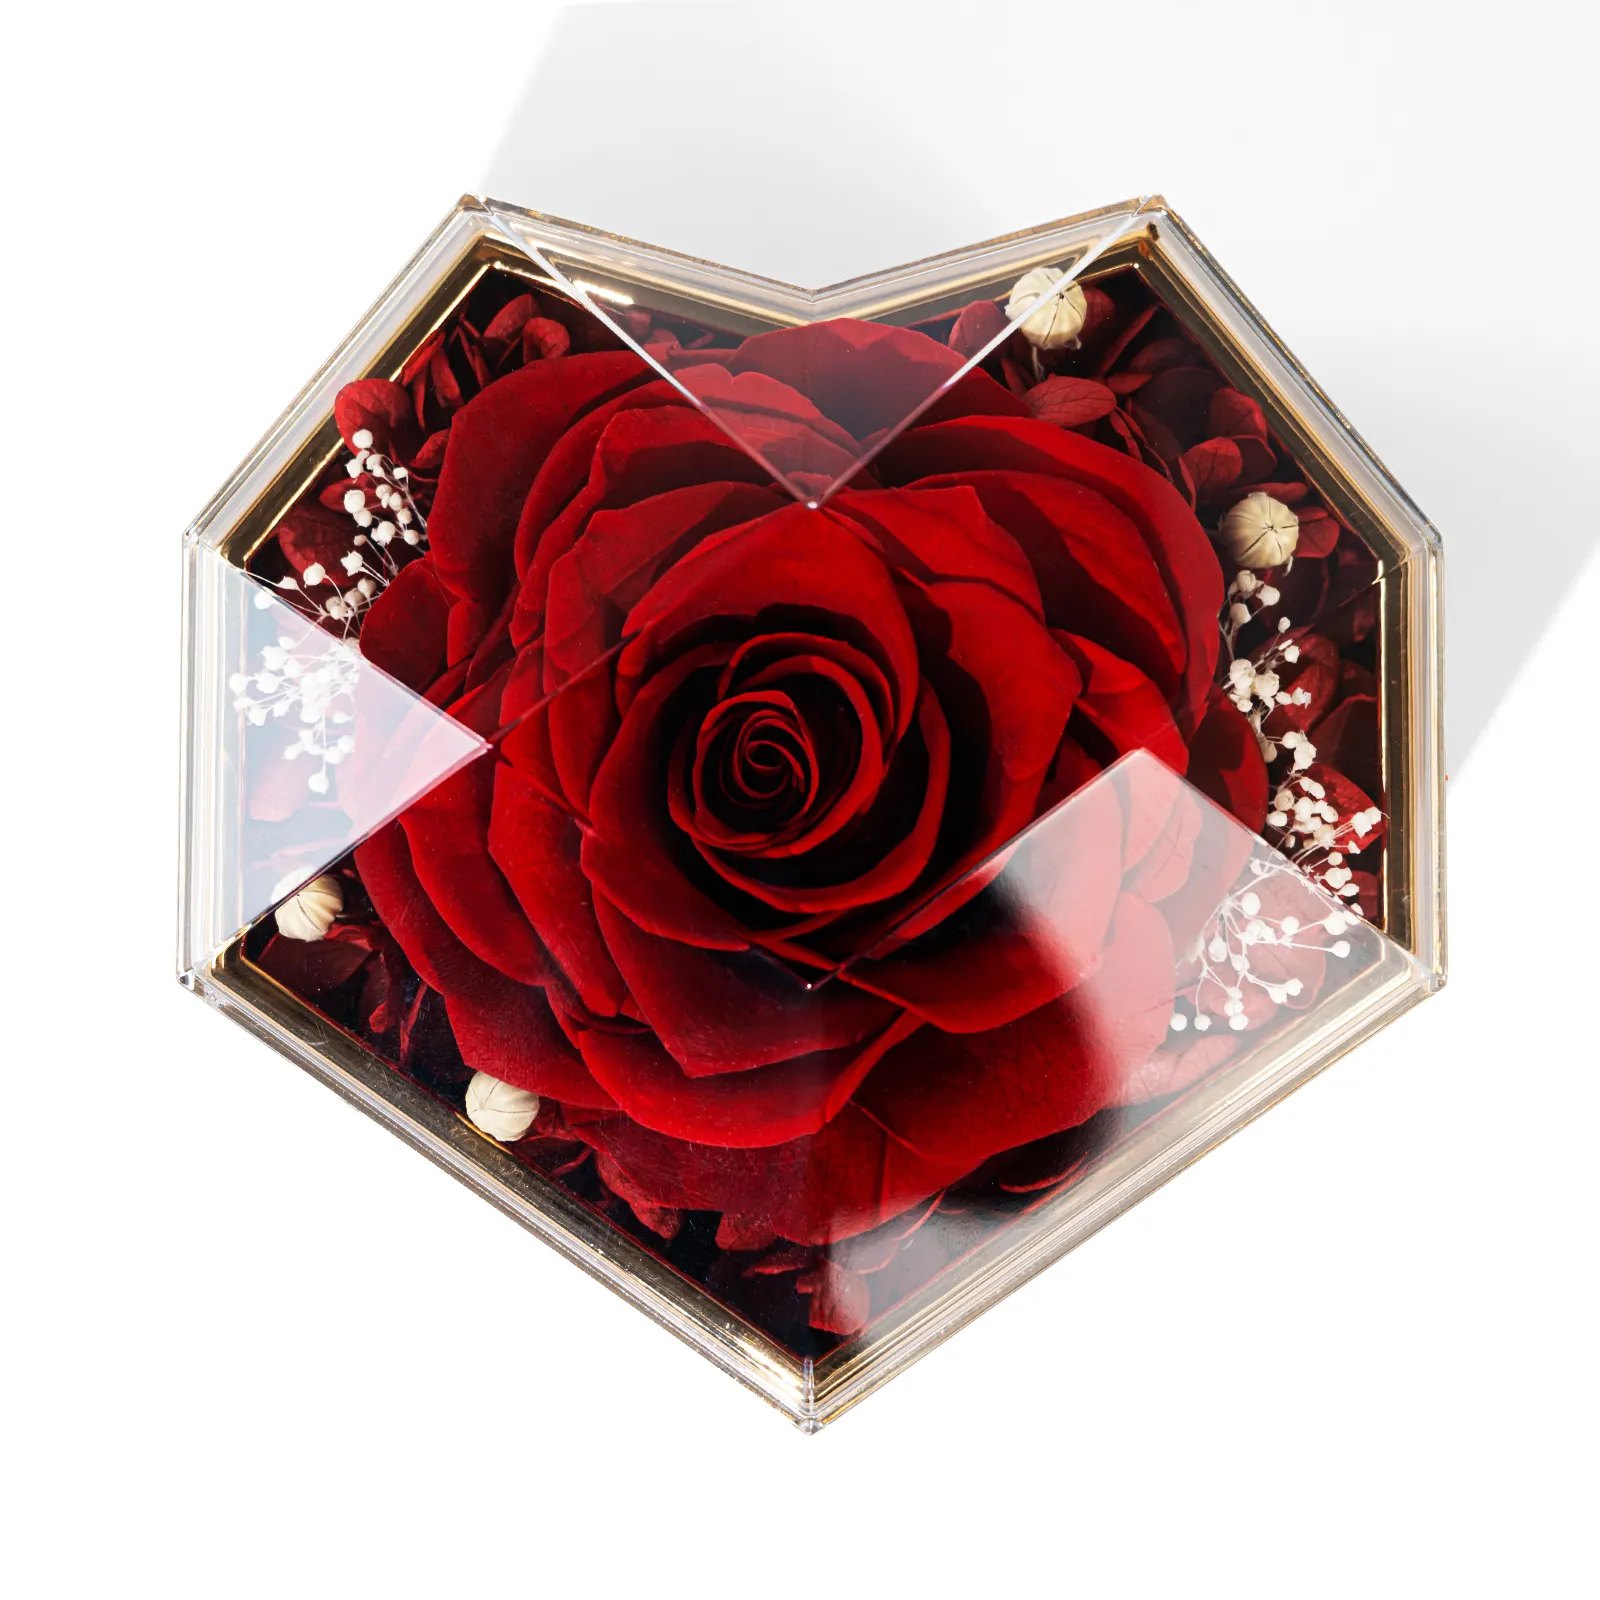 Kotak perhiasan hati bunga abadi merah yang diawetkan bunga mawar asli untuk hadiah Hari Ibu Hari Valentine